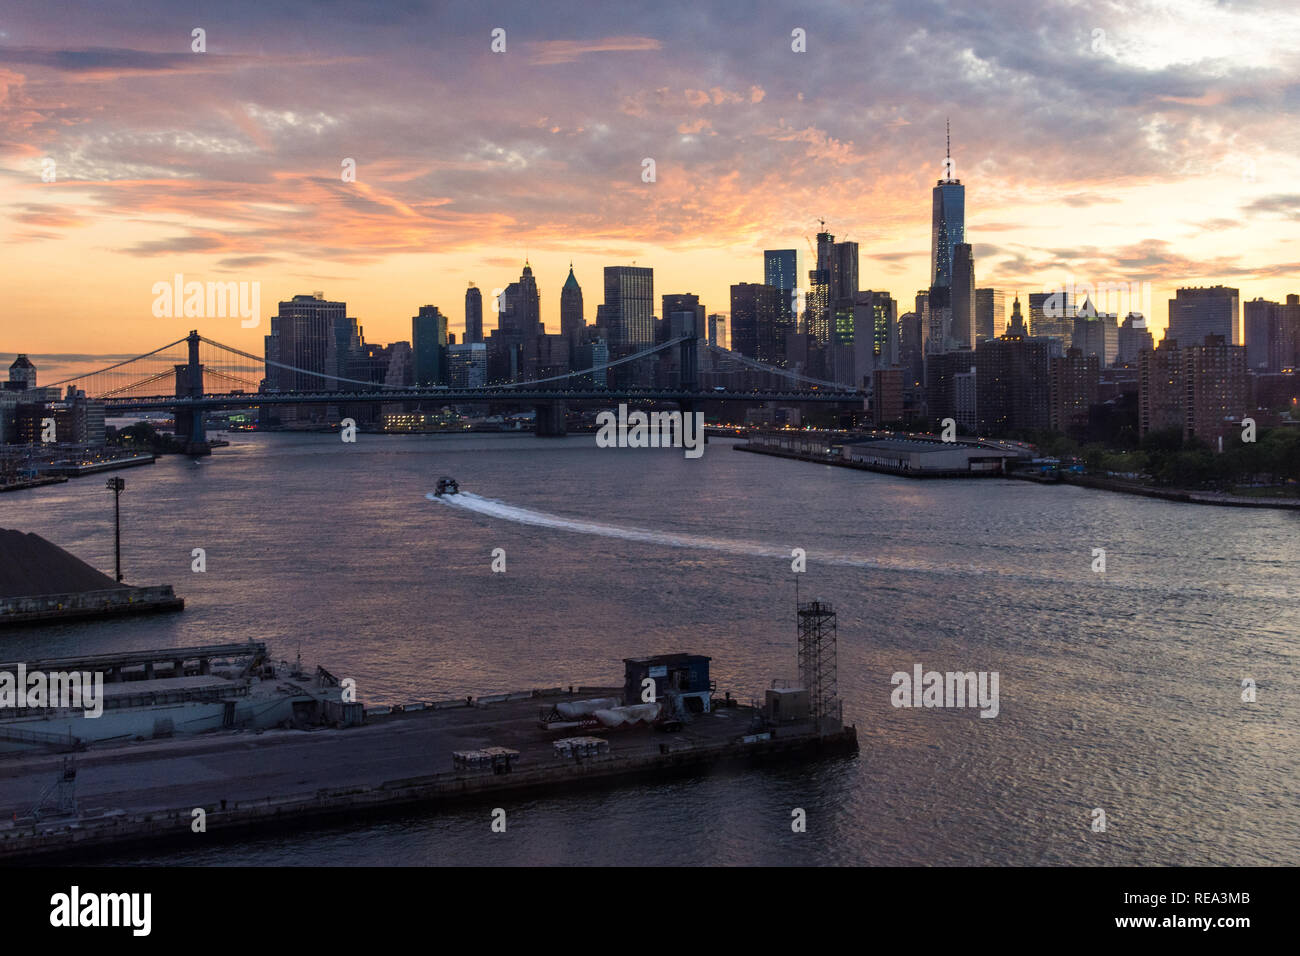 Un bateau traverse l'East River, en face de la Manhattan skyline at sunset Banque D'Images